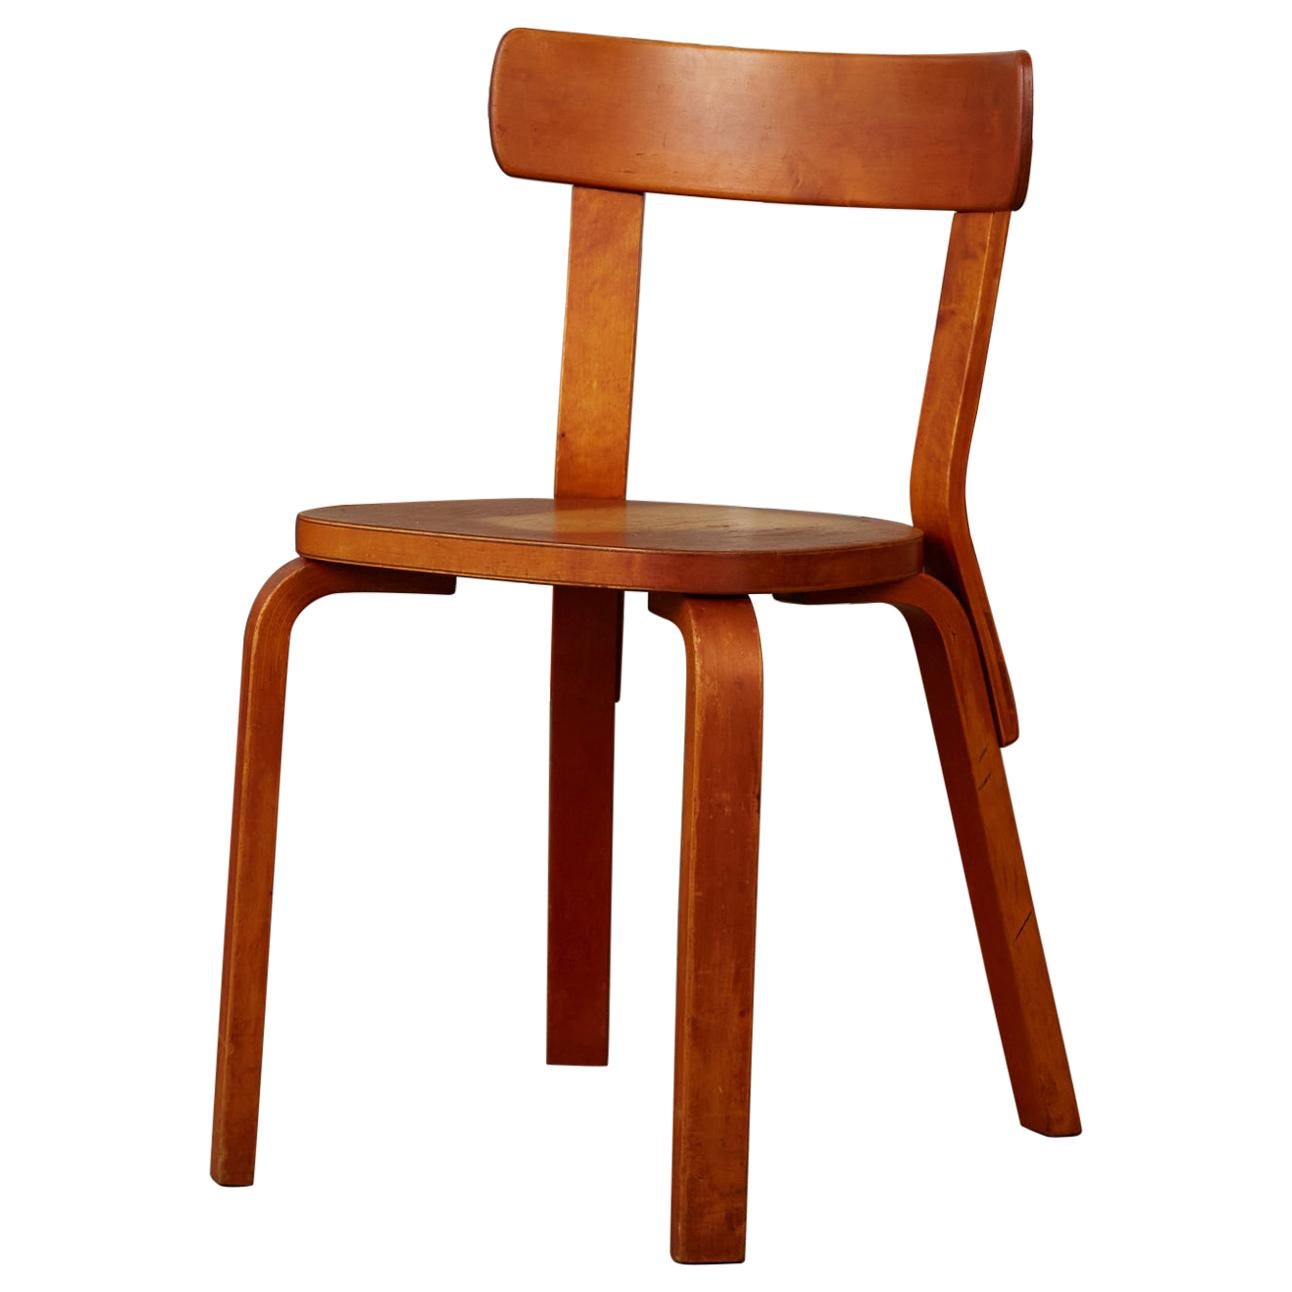 Model 69 Chair by Alvar Aalto for Artek